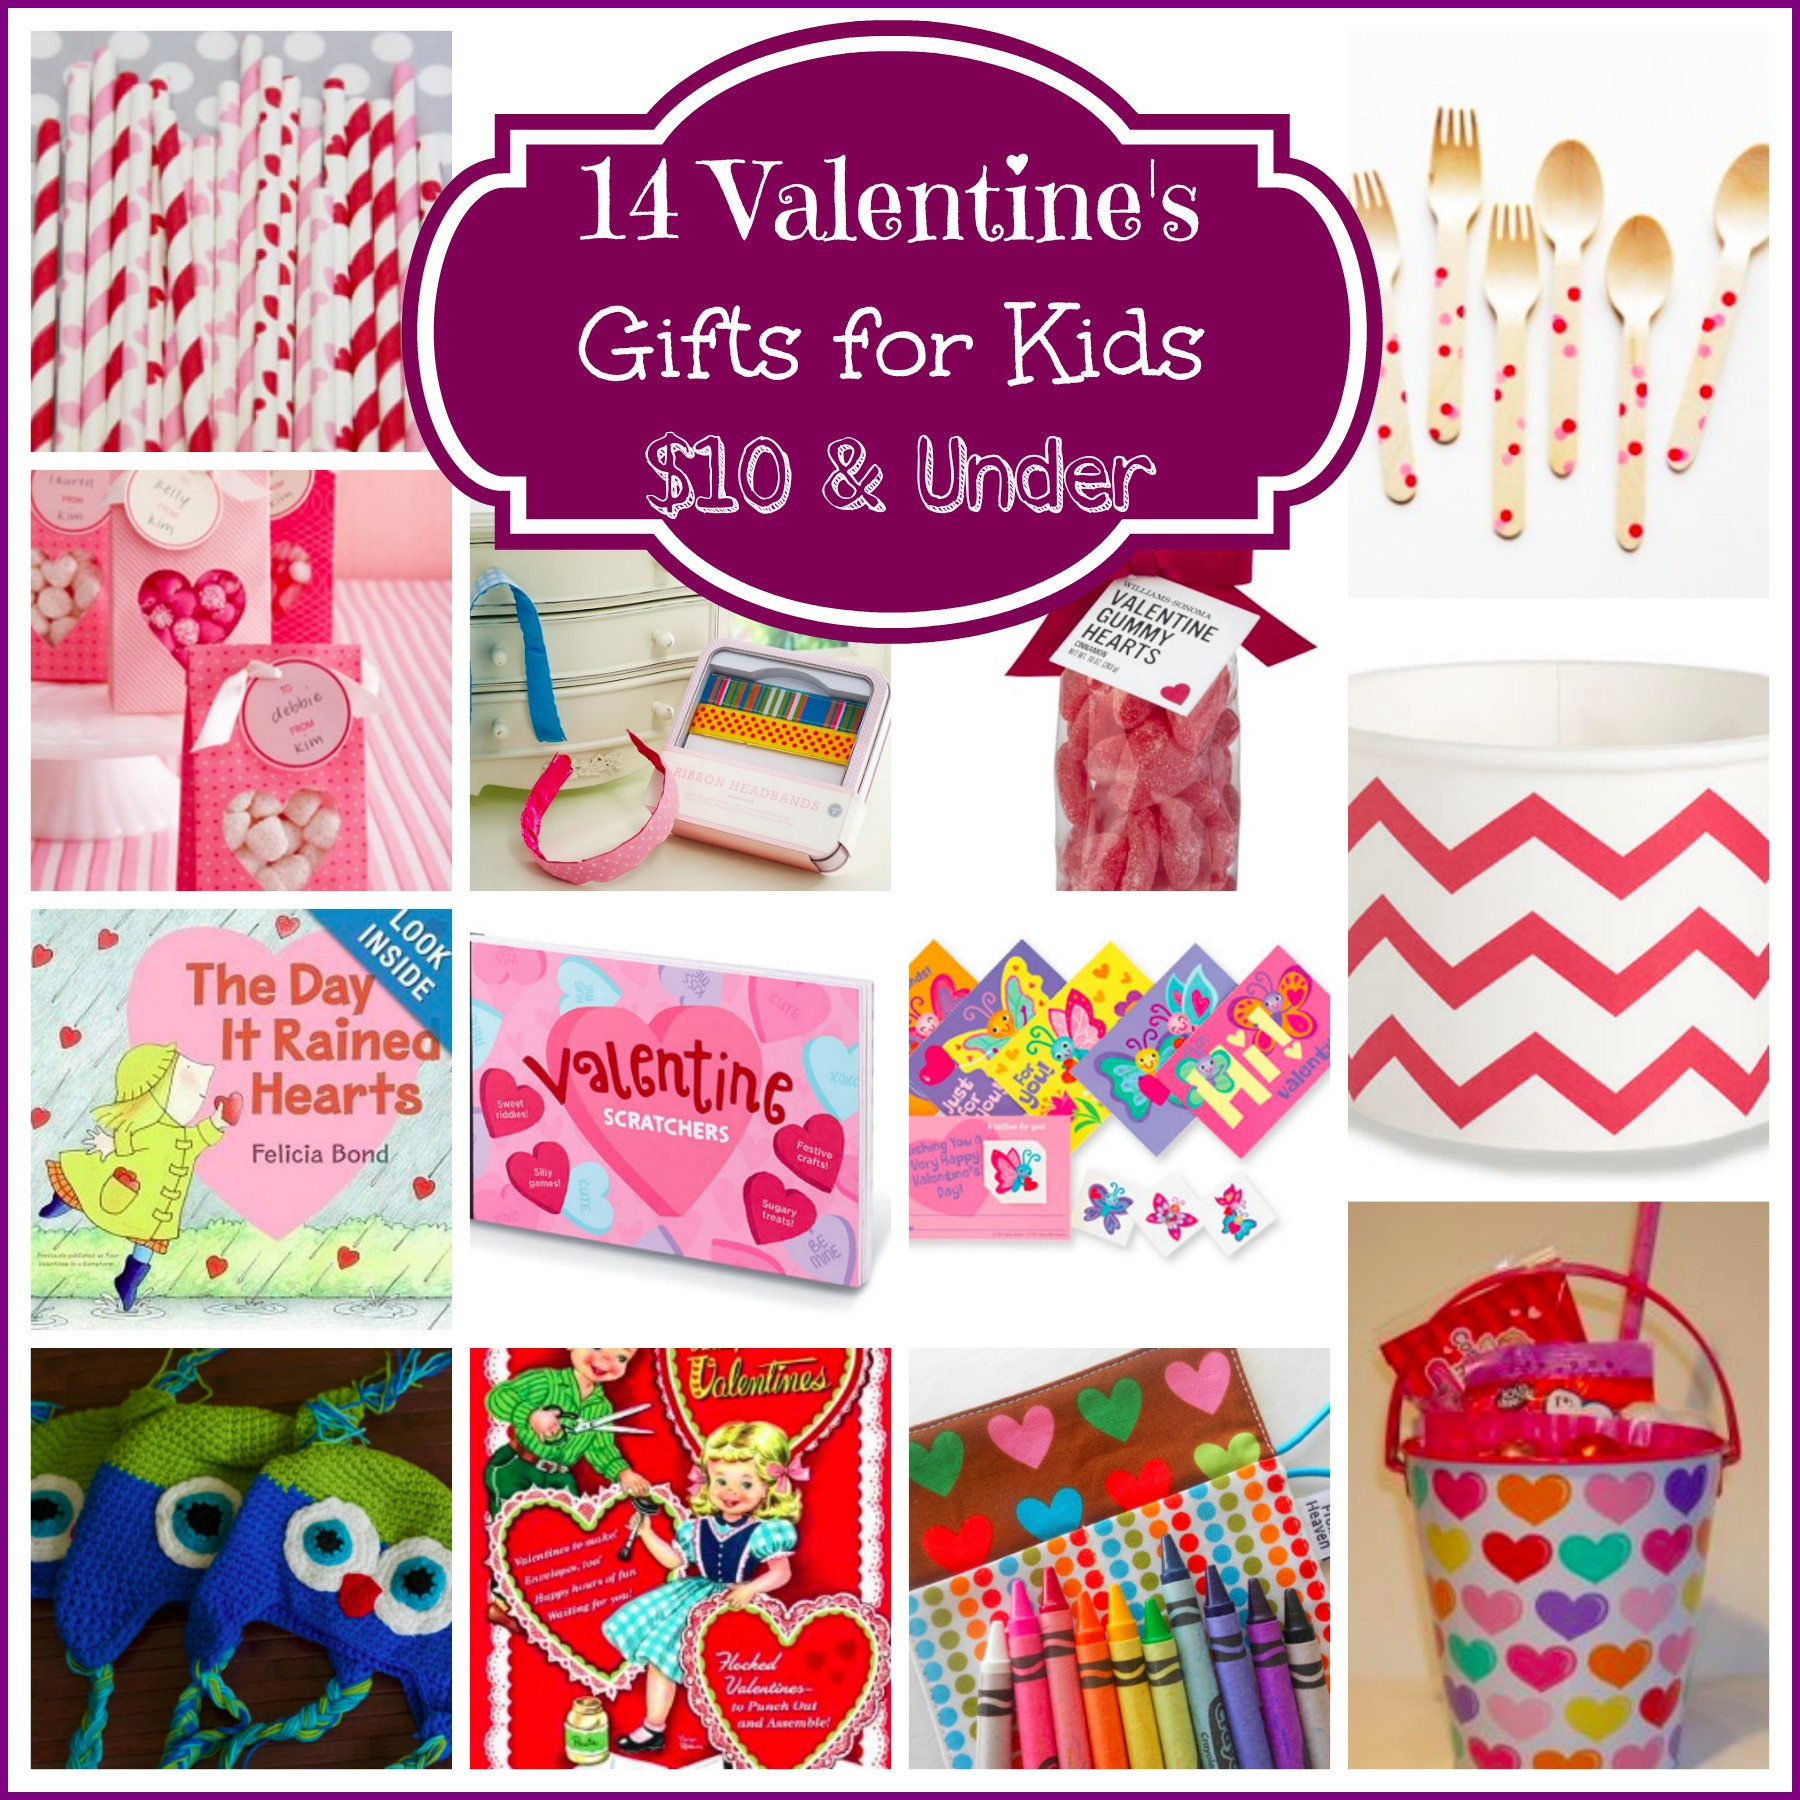 Valentines Gift Ideas For Children
 14 Valentine’s Day Gifts for Kids $10 & Under